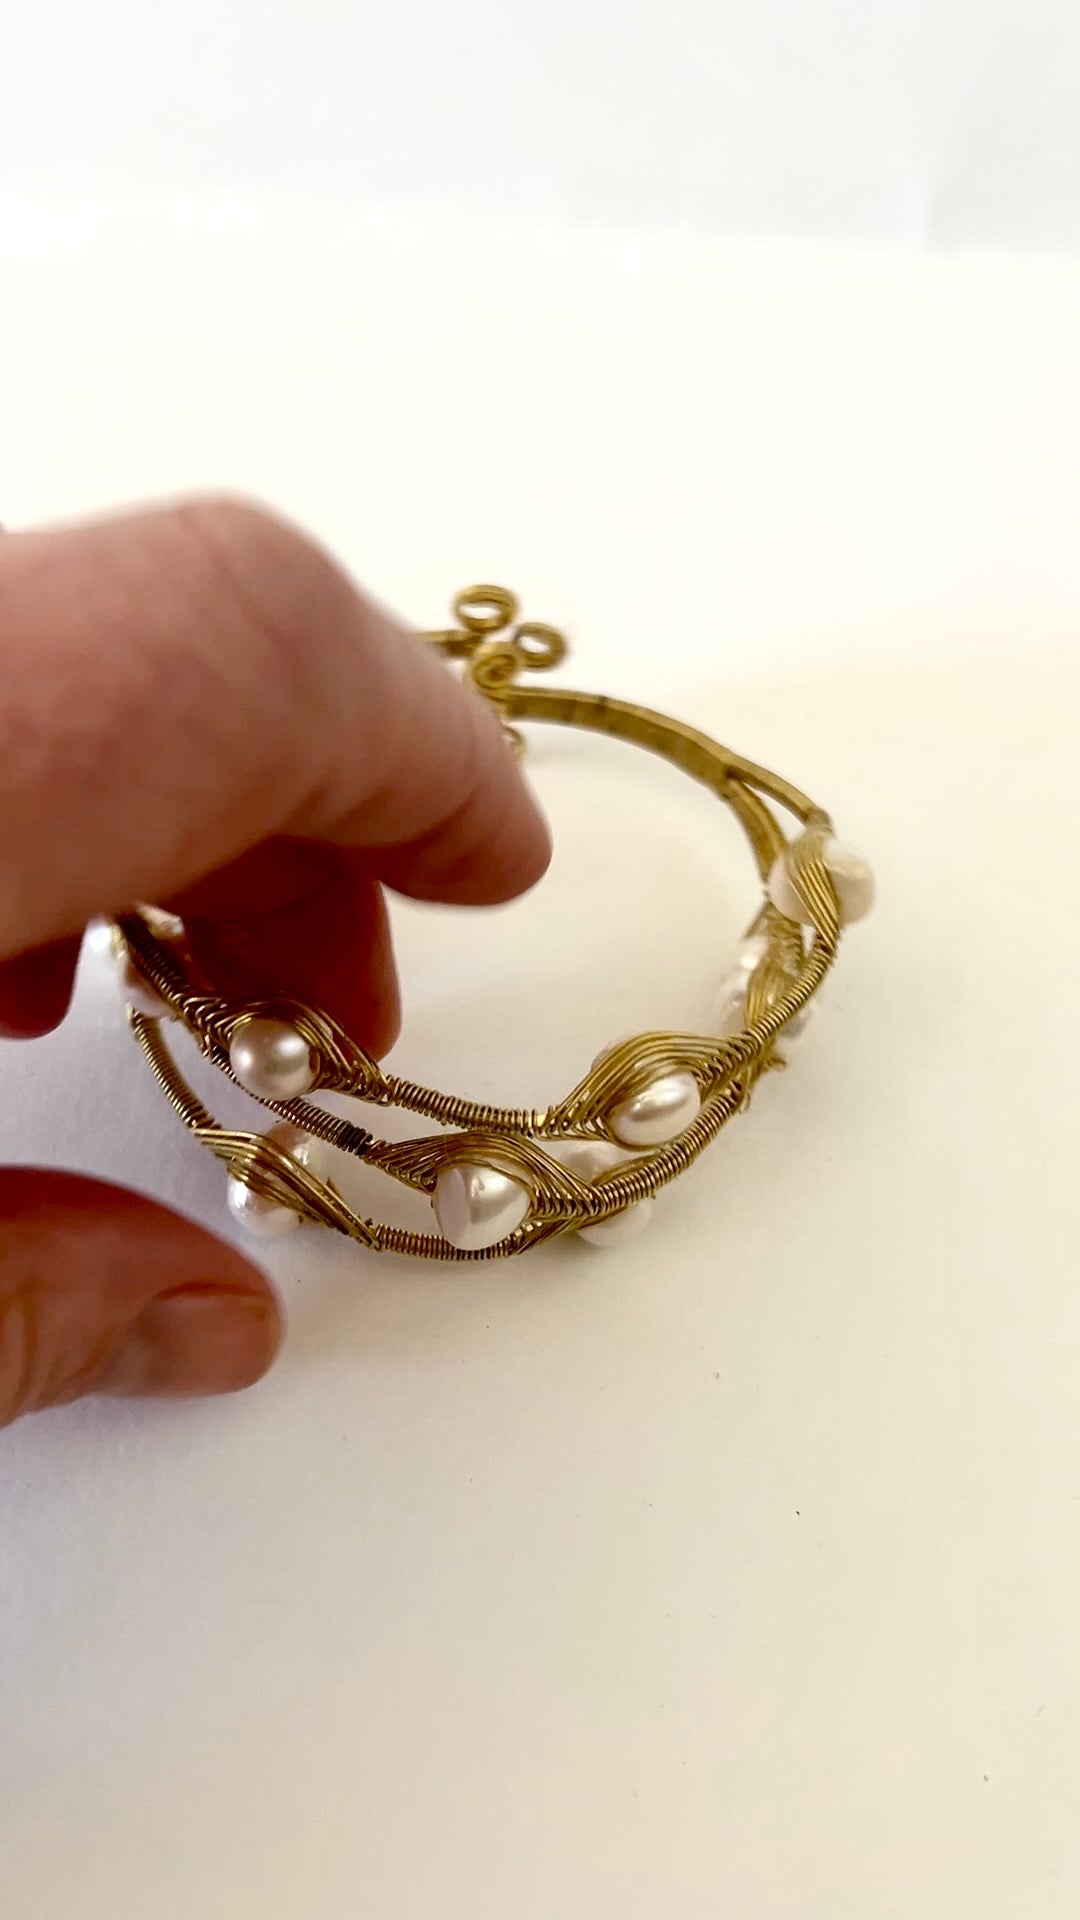 Multi layered woven gemstone bracelet - Sundara Joon